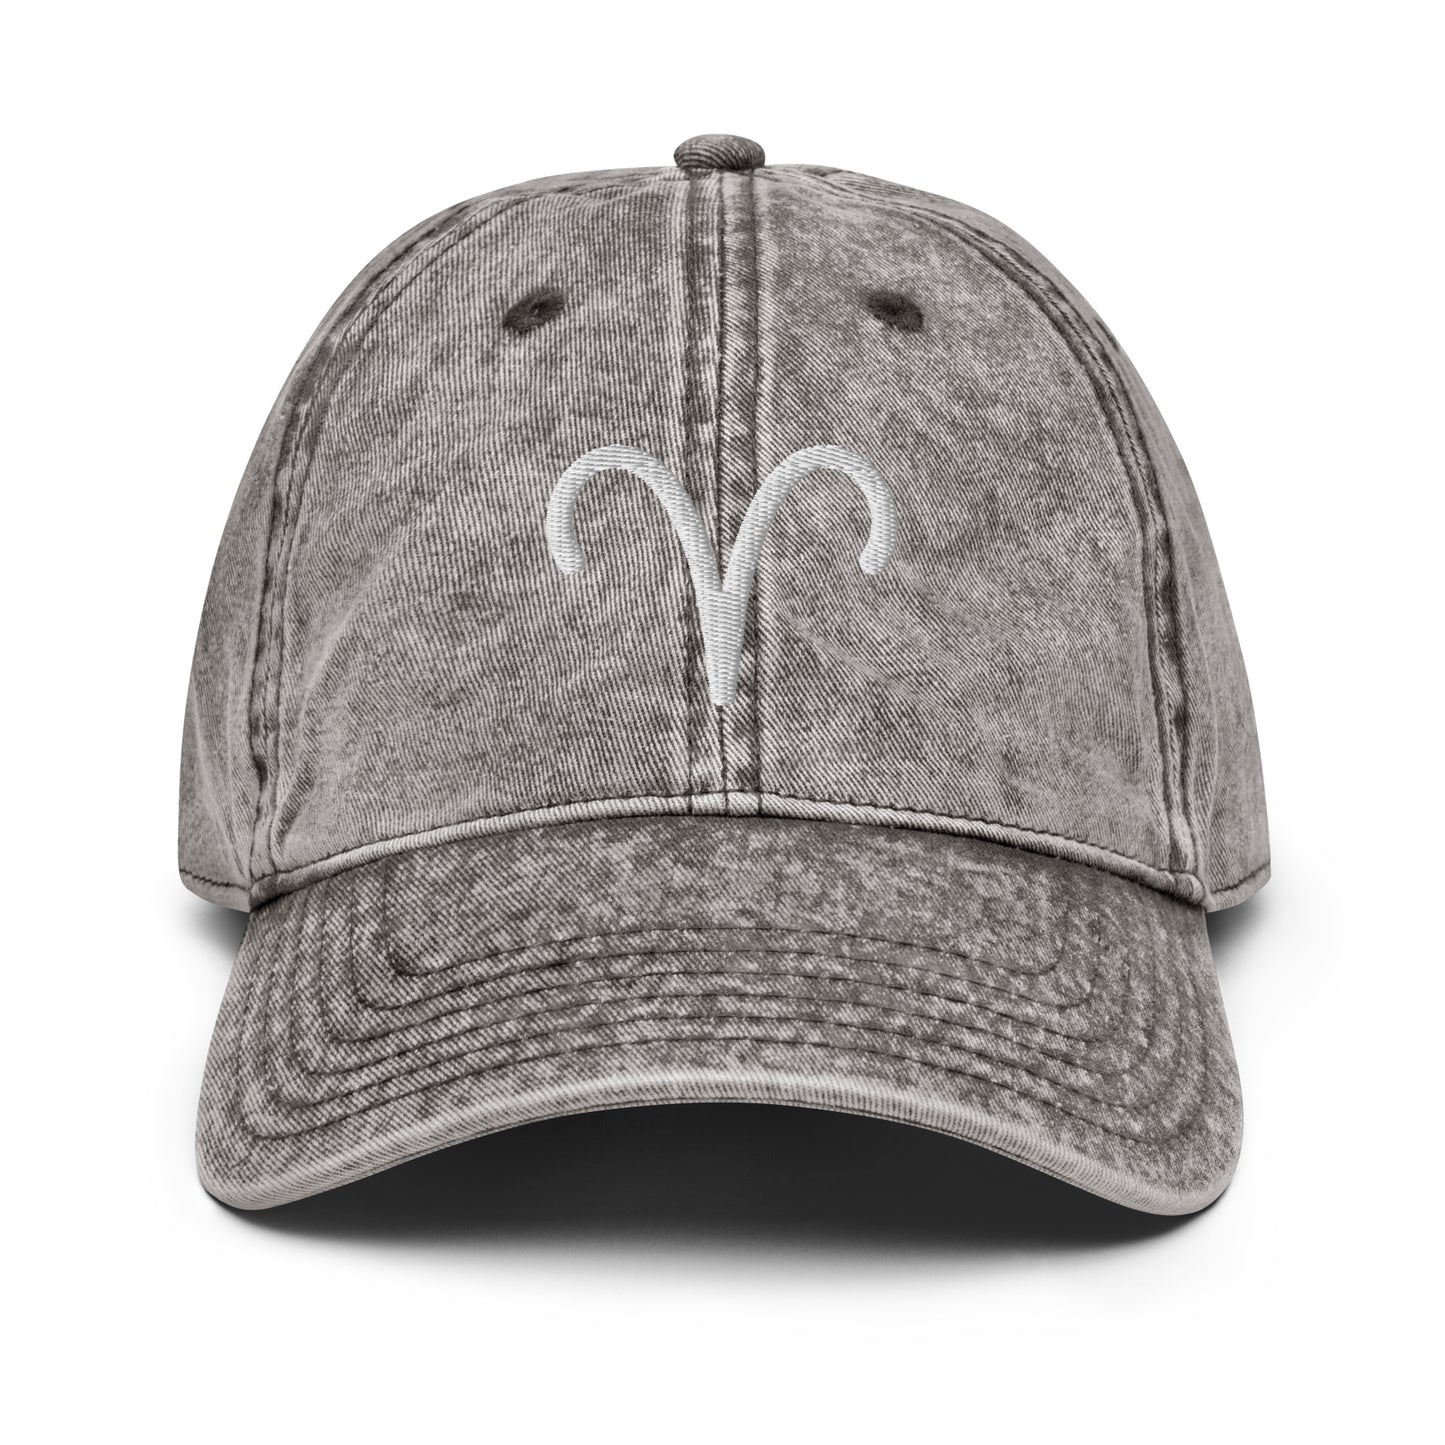 Aries Symbol Vintage Distressed Hat